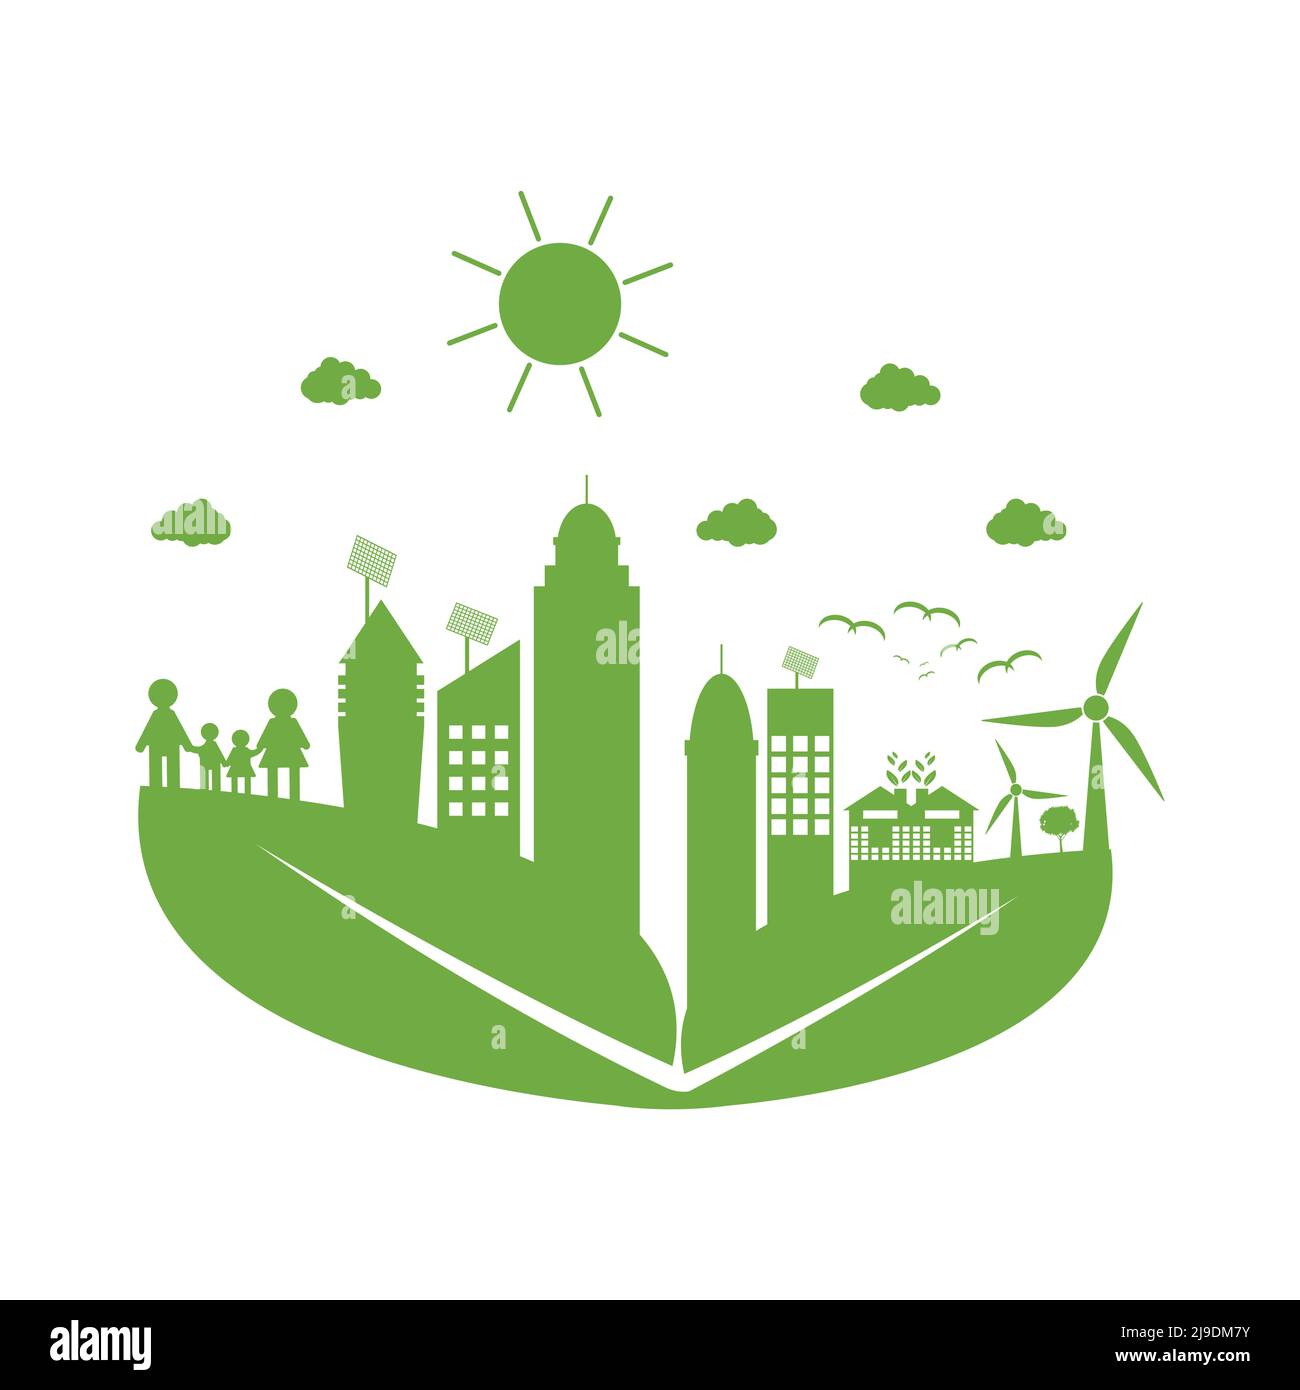 Les villes vertes aident le monde avec des idées de concept écologiques, la lustrisation de vecteur Illustration de Vecteur